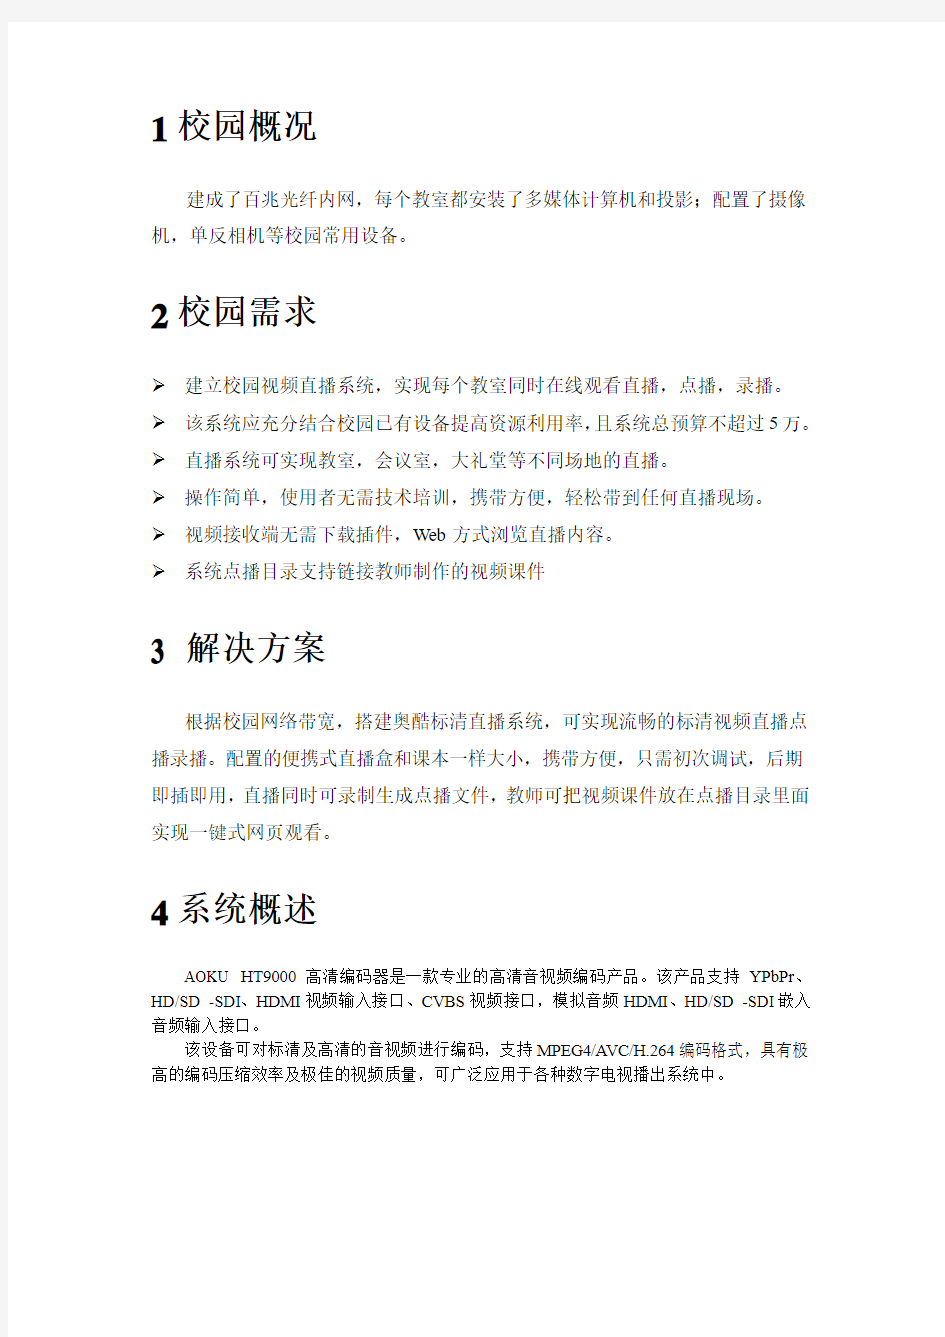 重庆一小学校园网络视频直播系统应用案例